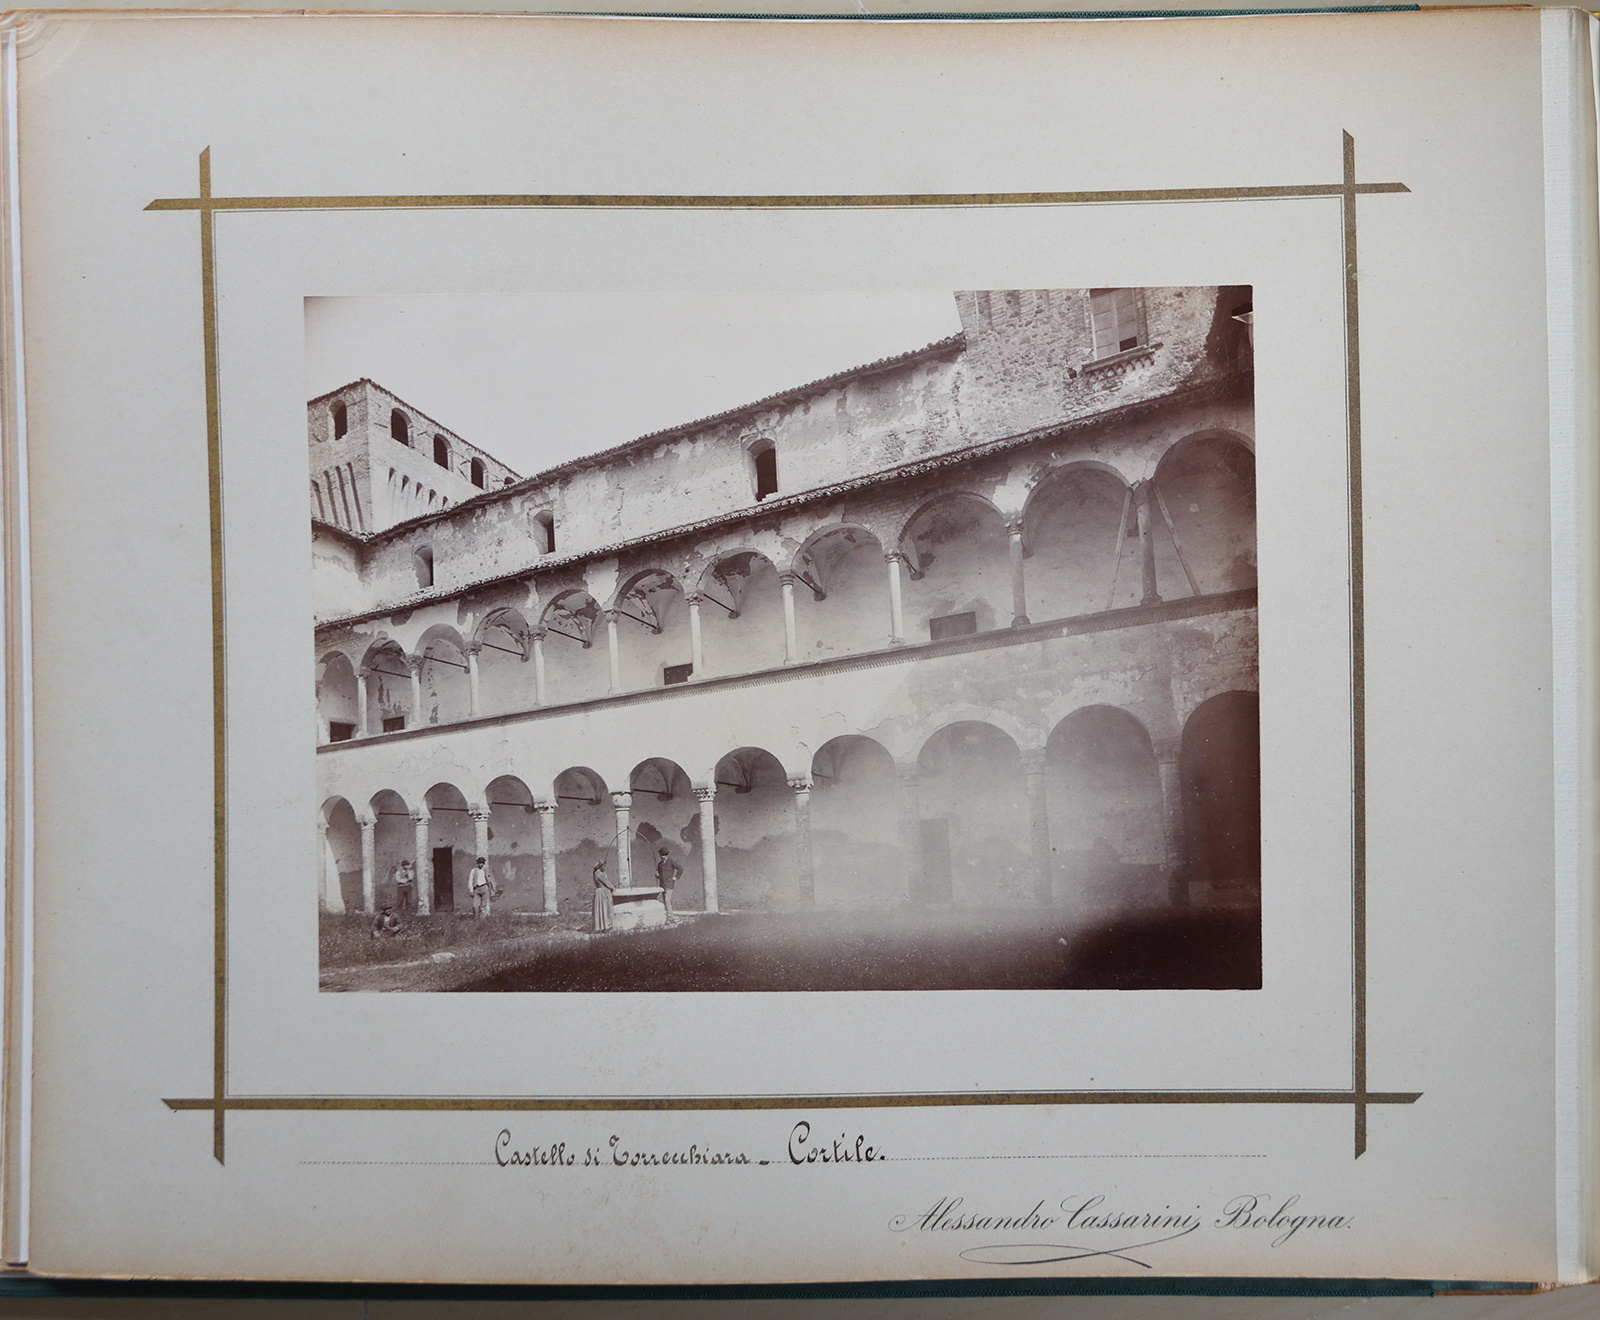 Architettura - Castelli - Rocche (positivo, elemento-parte componente) di Cassarini, Alessandro (XIX)